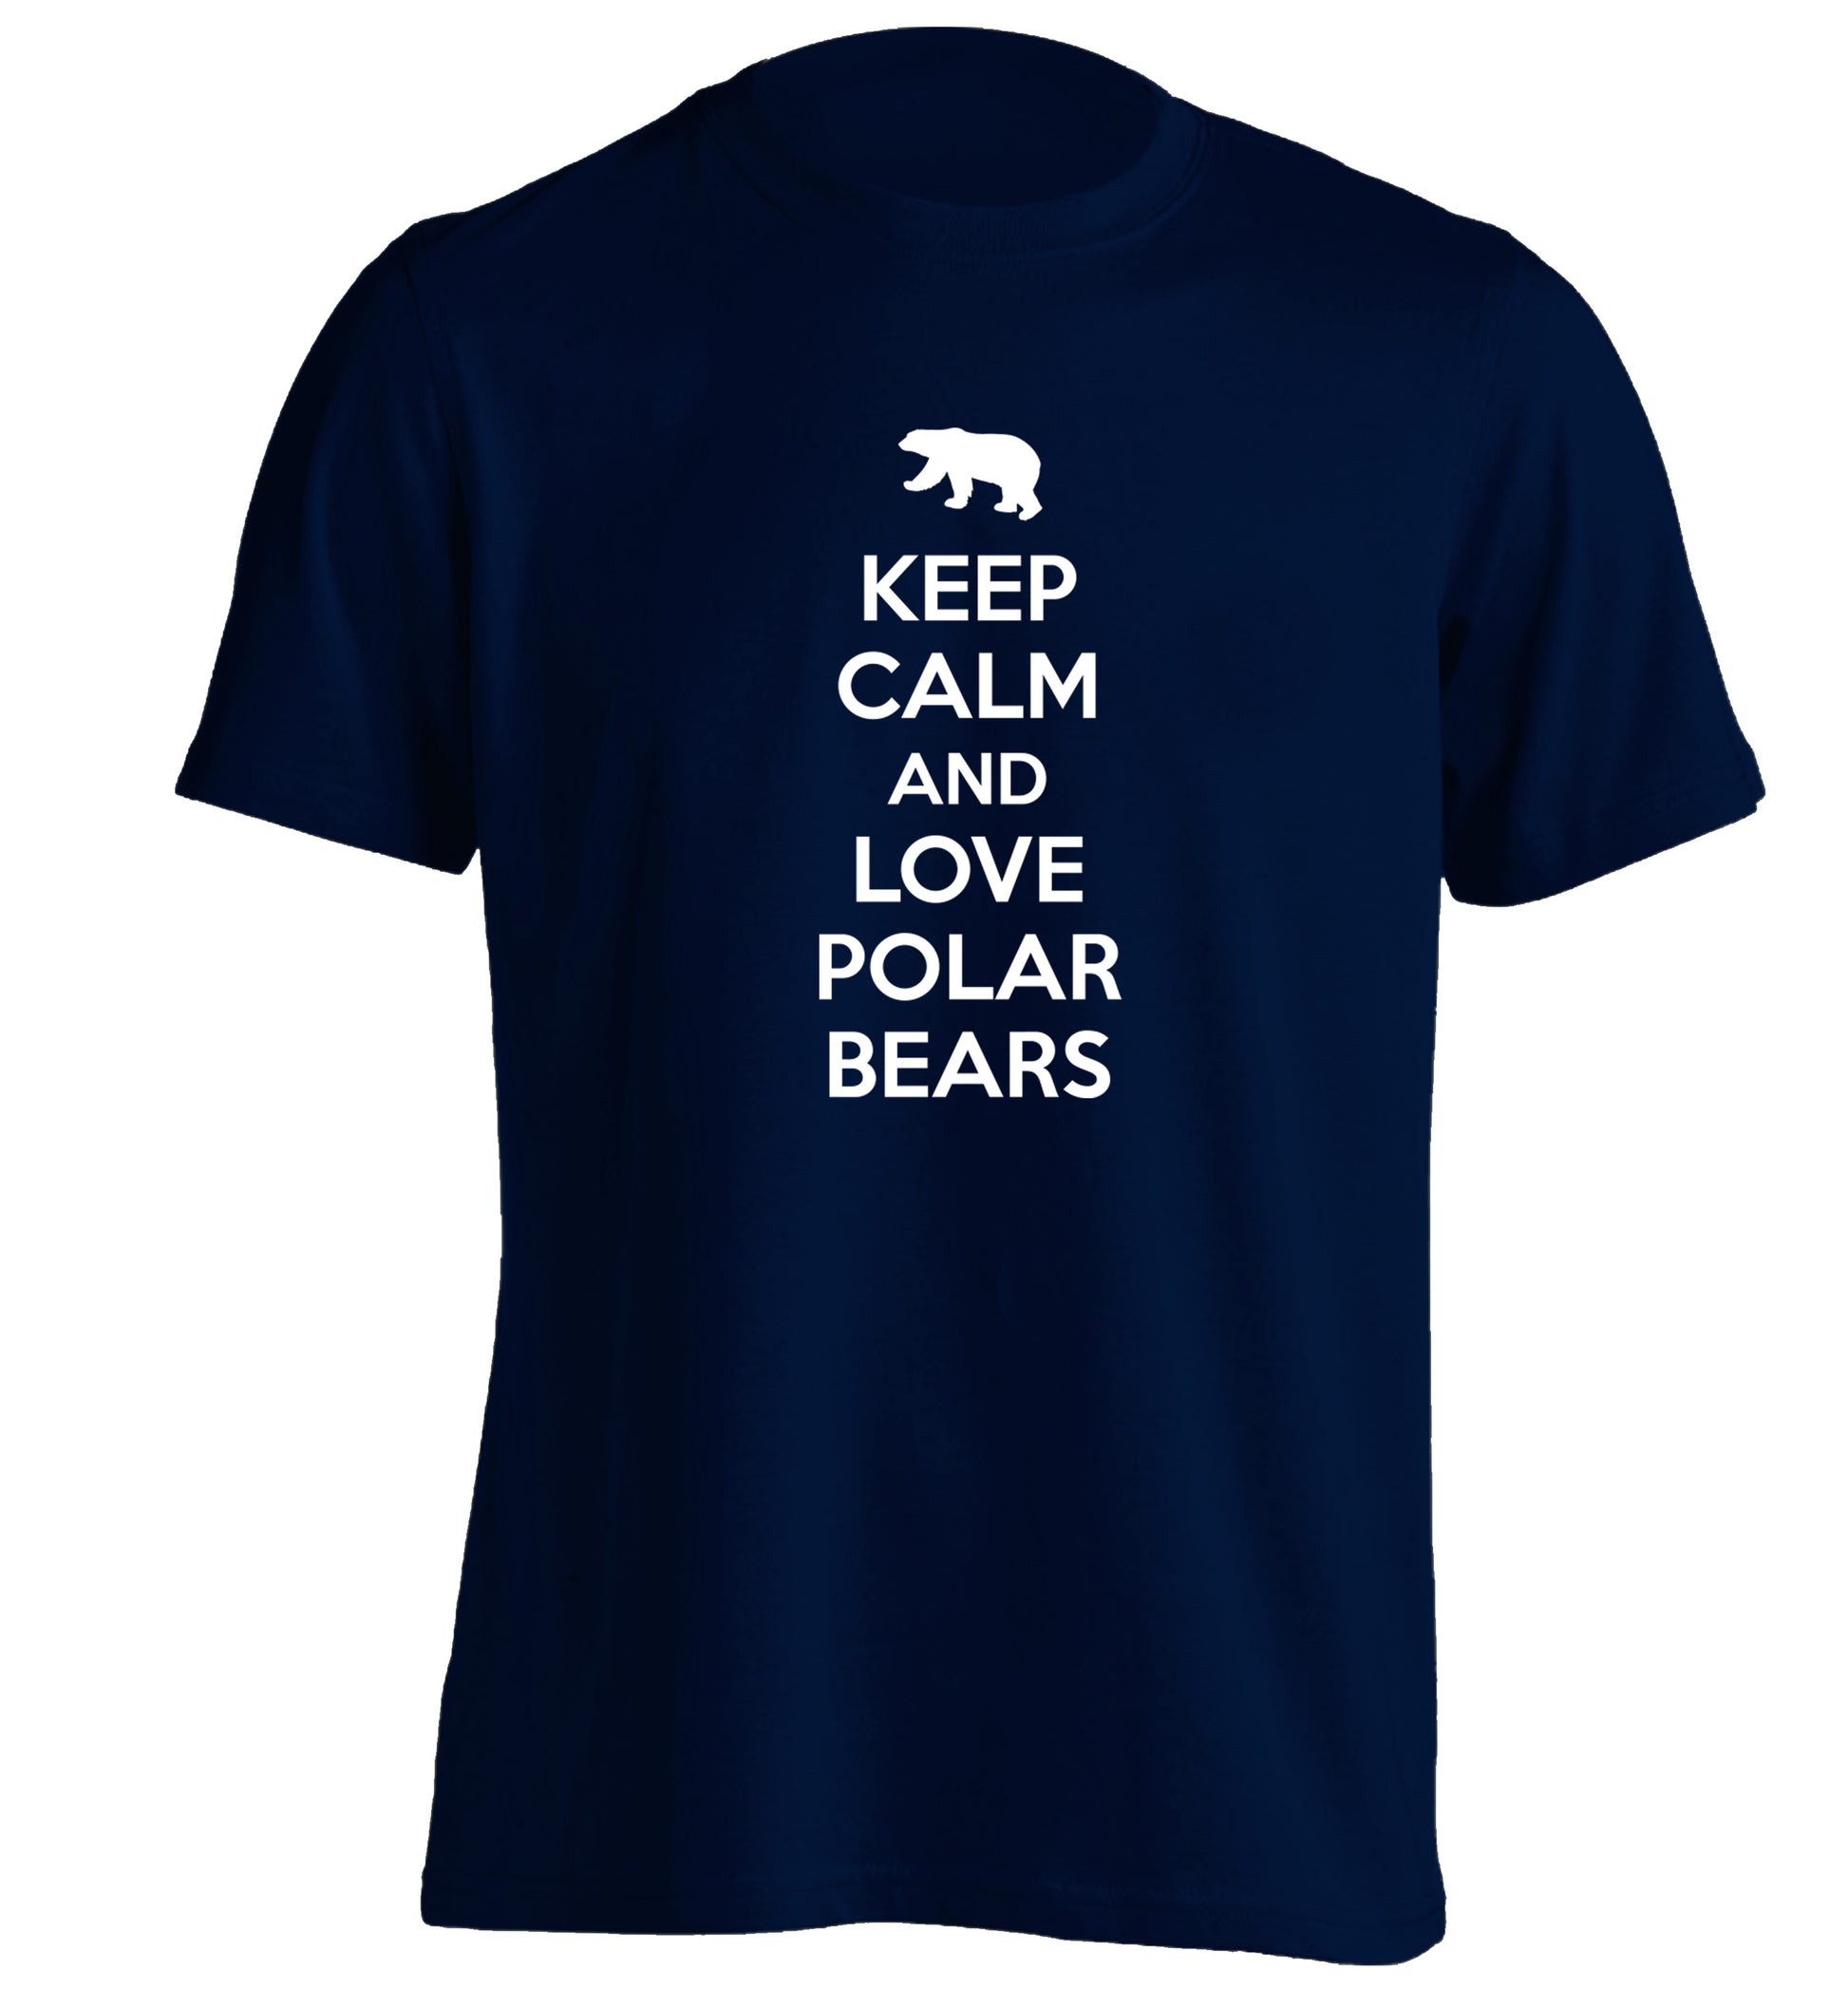 Keep calm and love polar bears adults unisex navy Tshirt 2XL